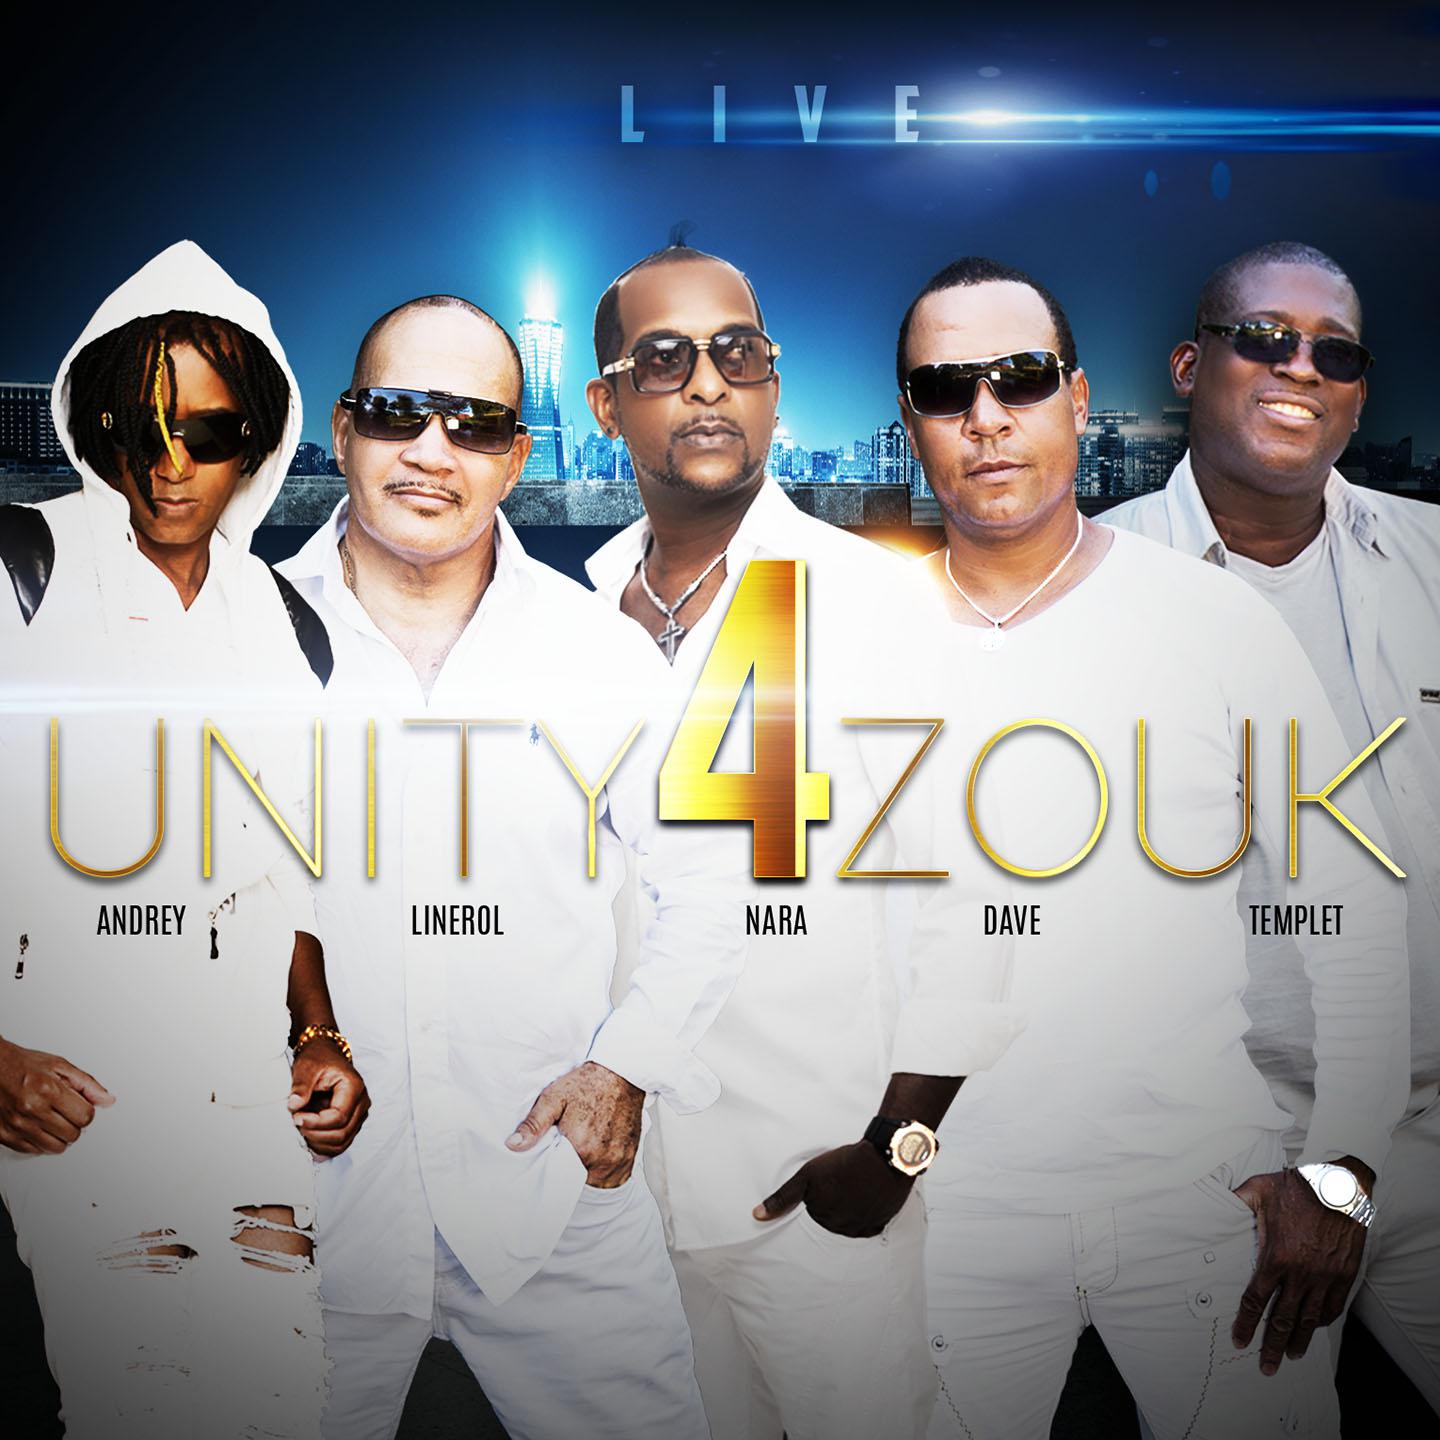 Unity 4 Zouk - Venise (Live)